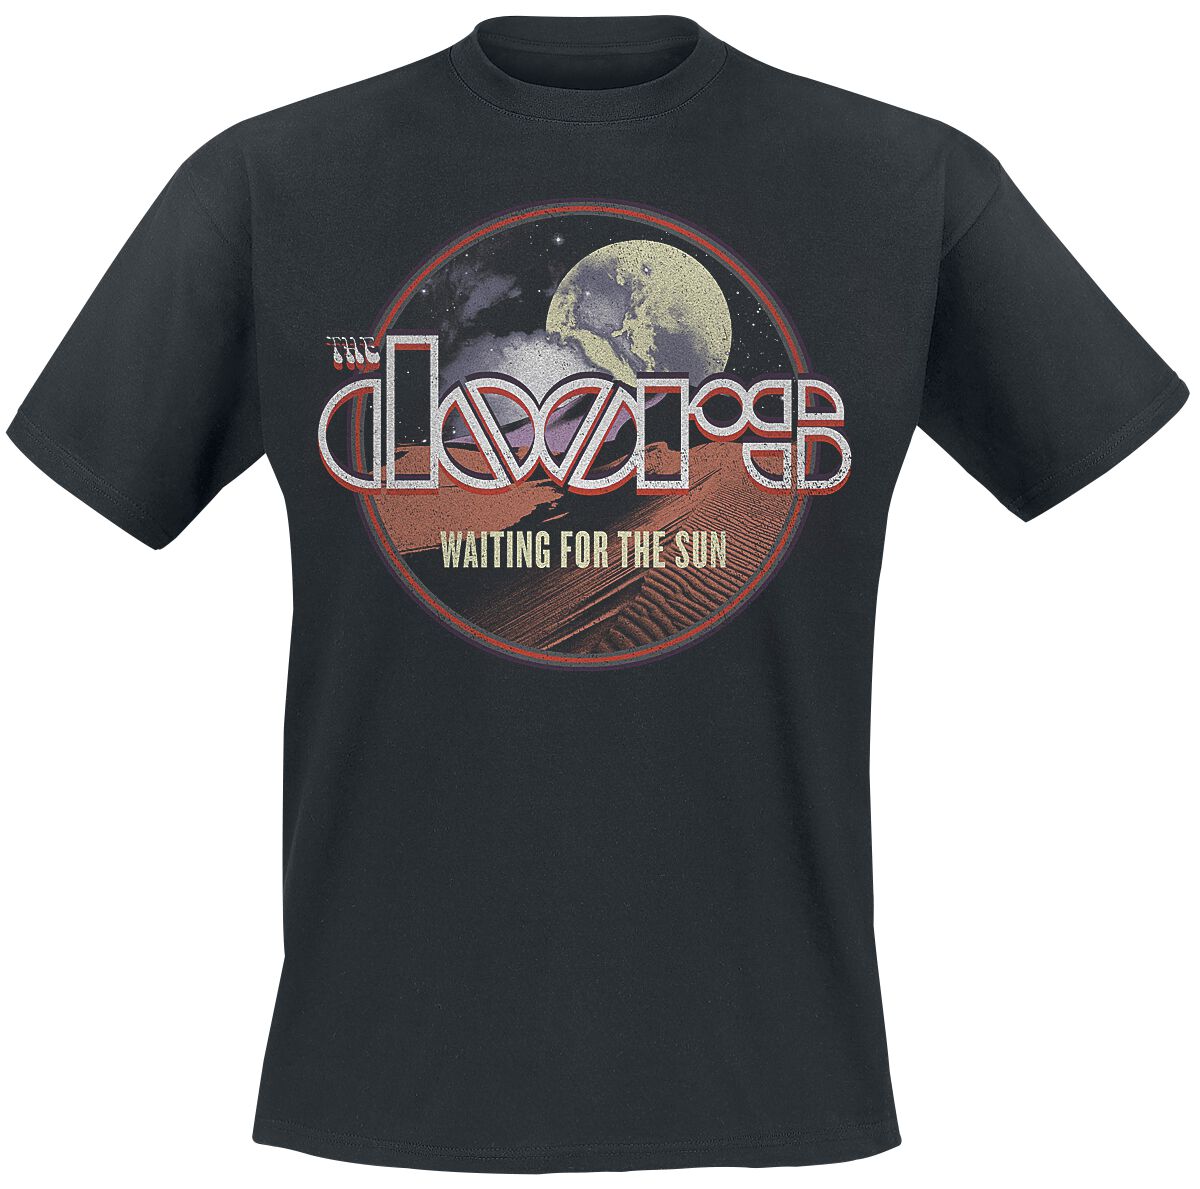 The Doors T-Shirt - Waiting For The Sun - S bis XXL - für Männer - Größe S - schwarz  - Lizenziertes Merchandise!